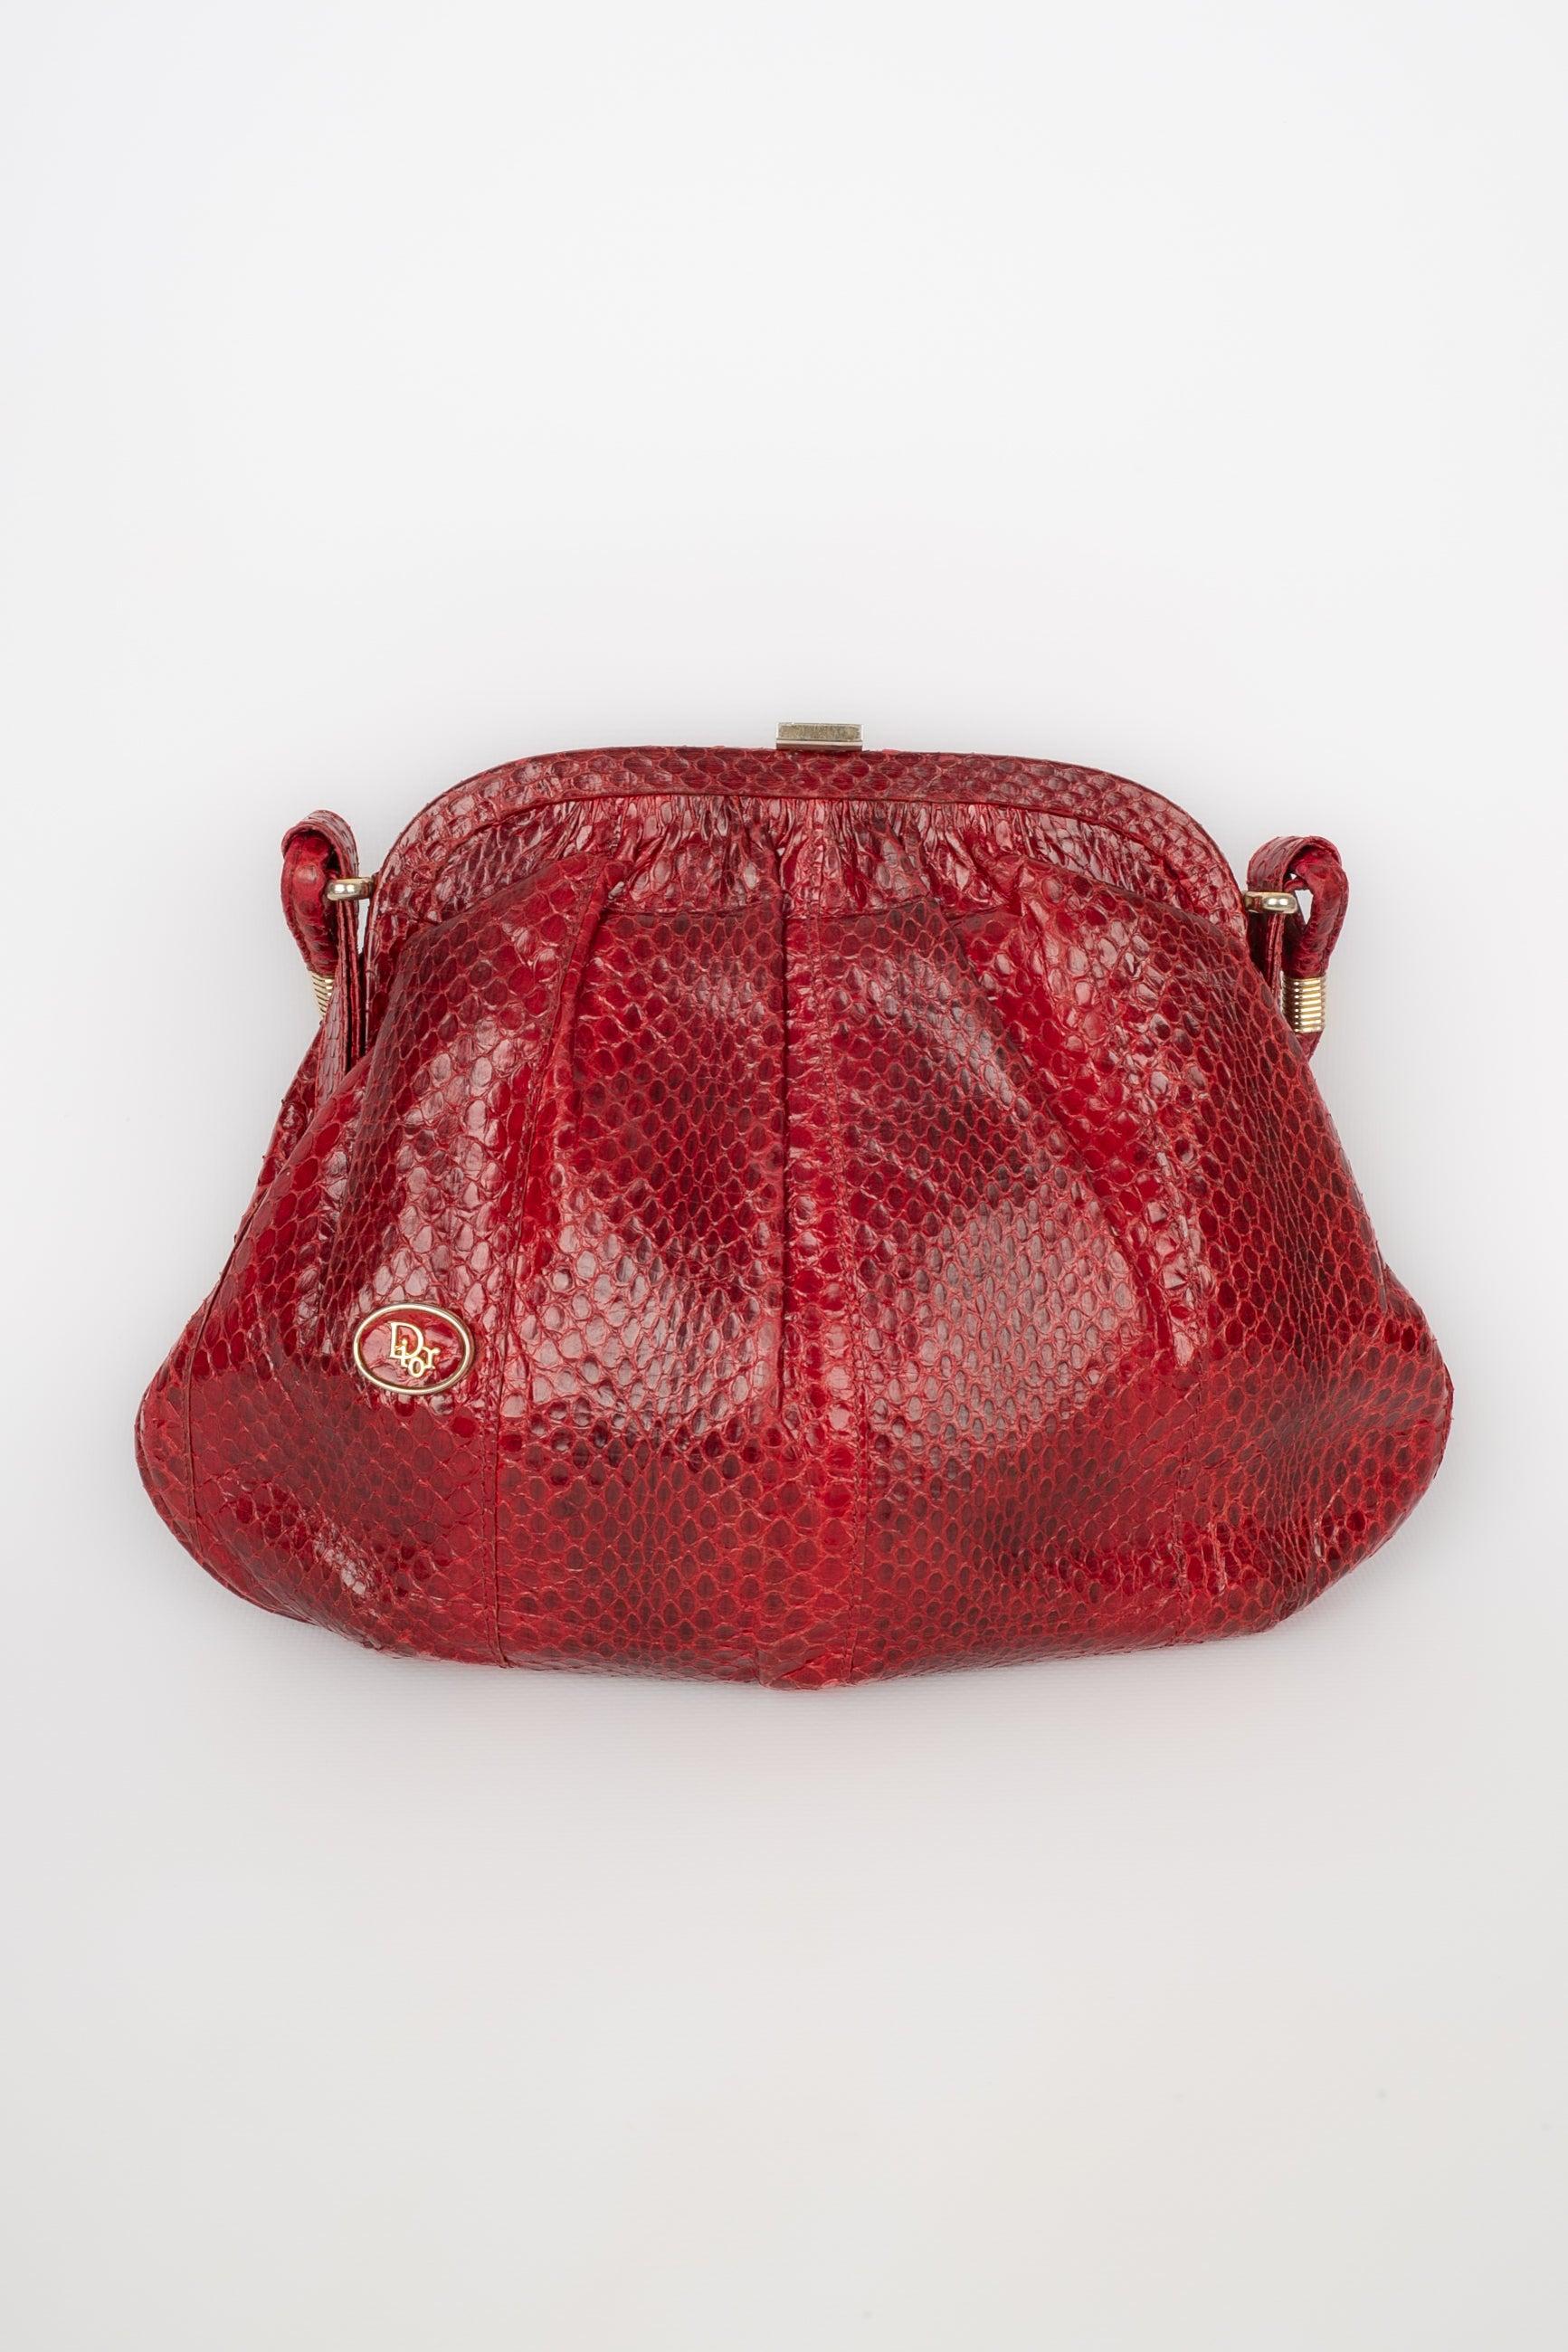 Dior - Rote Tasche aus exotischem Leder mit goldenen Metallelementen. Zu erwähnen ist, dass es einen Geruch gibt.

Zusätzliche Informationen:
Zustand: Guter Zustand
Abmessungen: Höhe: 18 cm - Länge: 27 cm - Tiefe: 6 cm - Stiel: 88 cm

Sellers